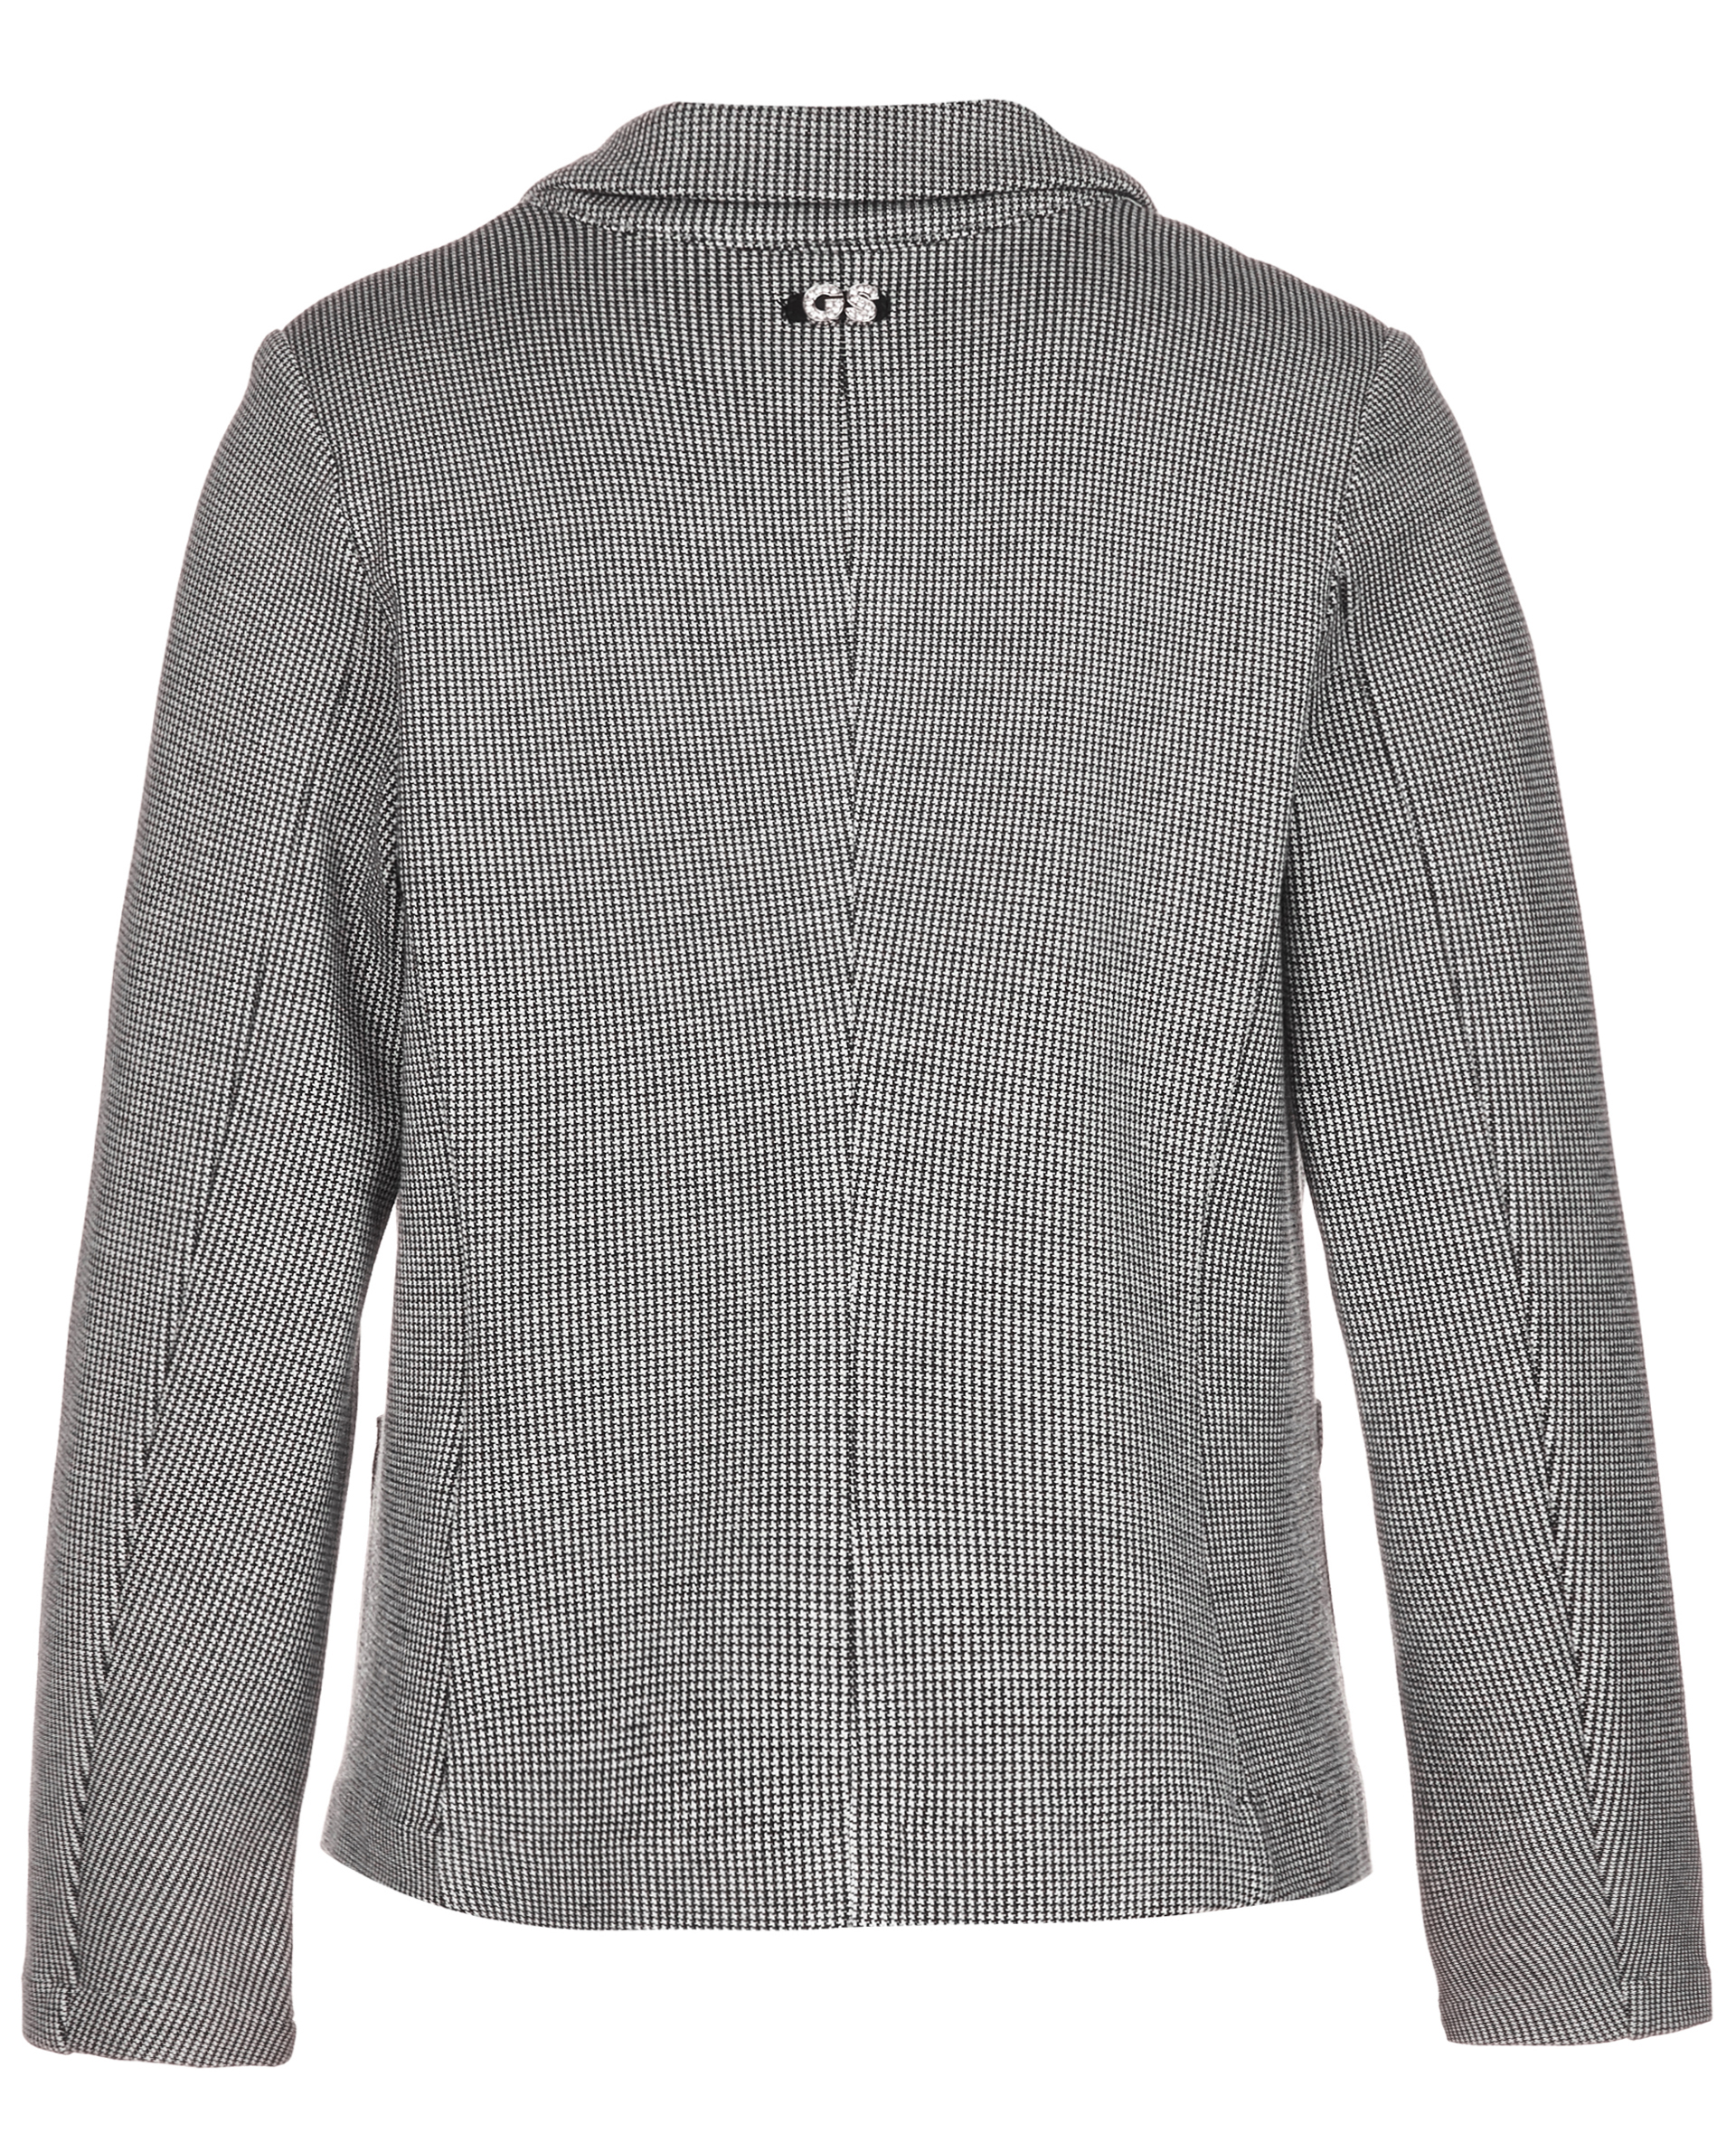 Классический серый пиджак Gulliver 218GSGC1903, размер 152 - фото 2